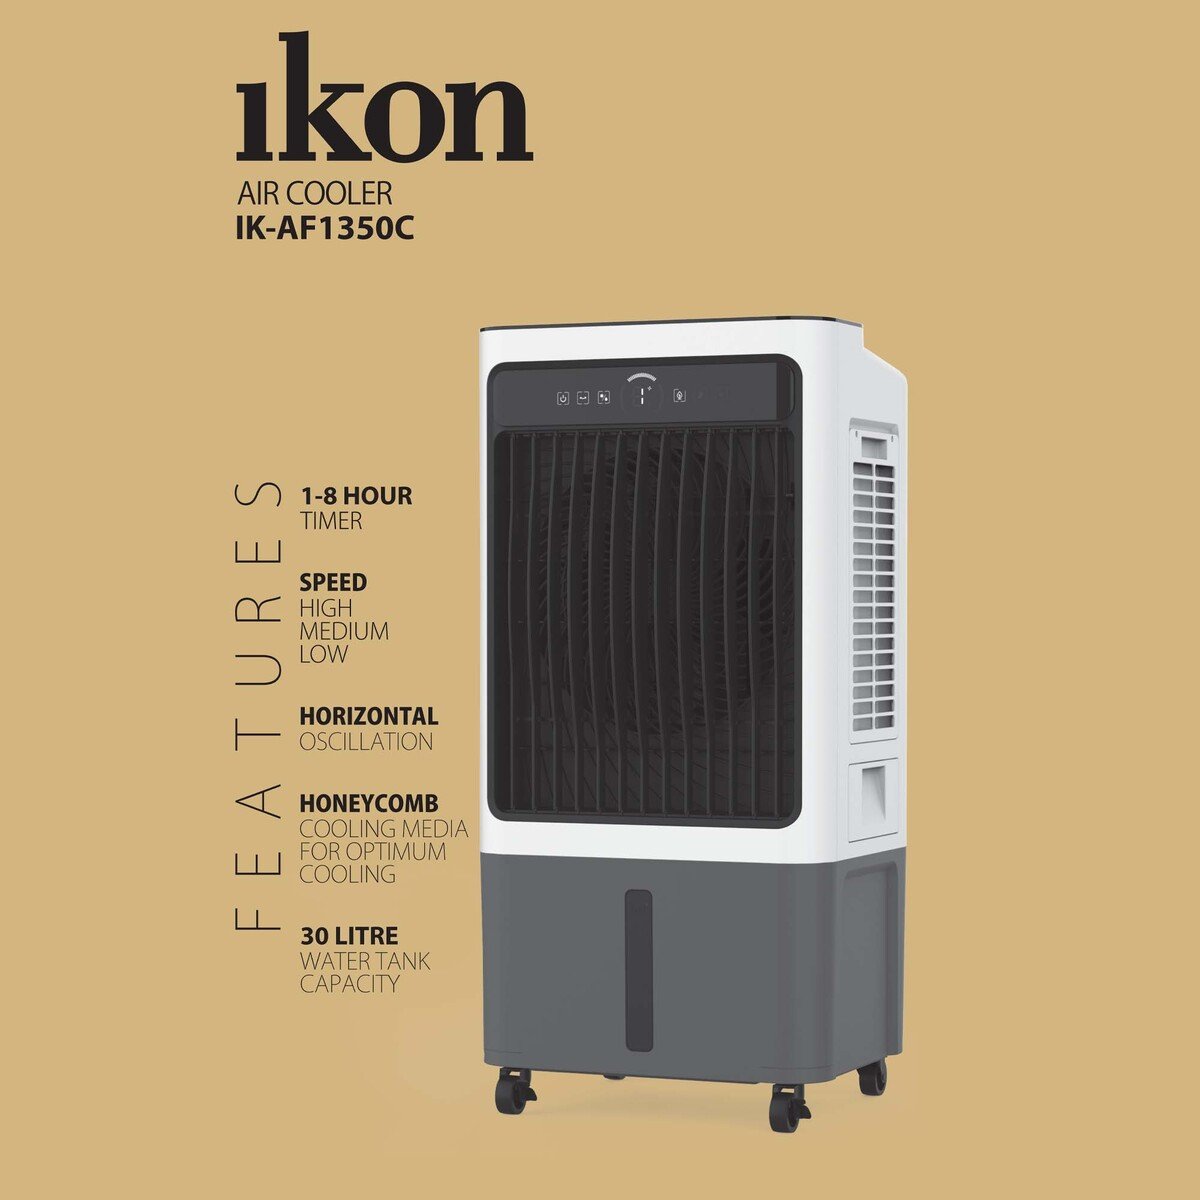 Ikon Air Cooler IK-AF1350C